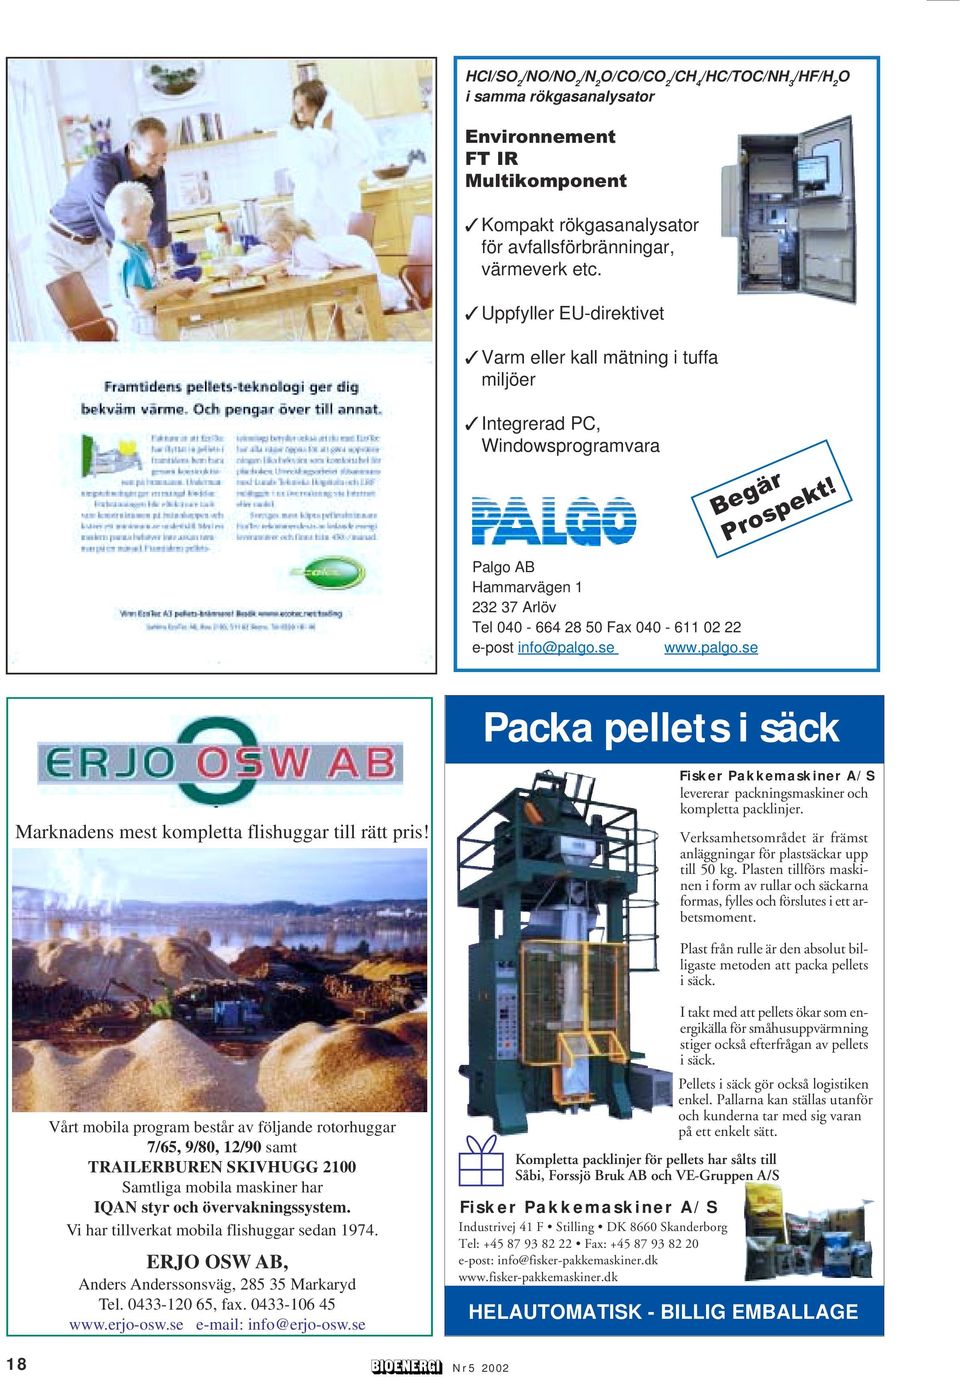 Palgo AB Hammarvägen 1 232 37 Arlöv Tel 040-664 28 50 Fax 040-611 02 22 e-post info@palgo.se www.palgo.se Packa pellets i säck Marknadens mest kompletta flishuggar till rätt pris!